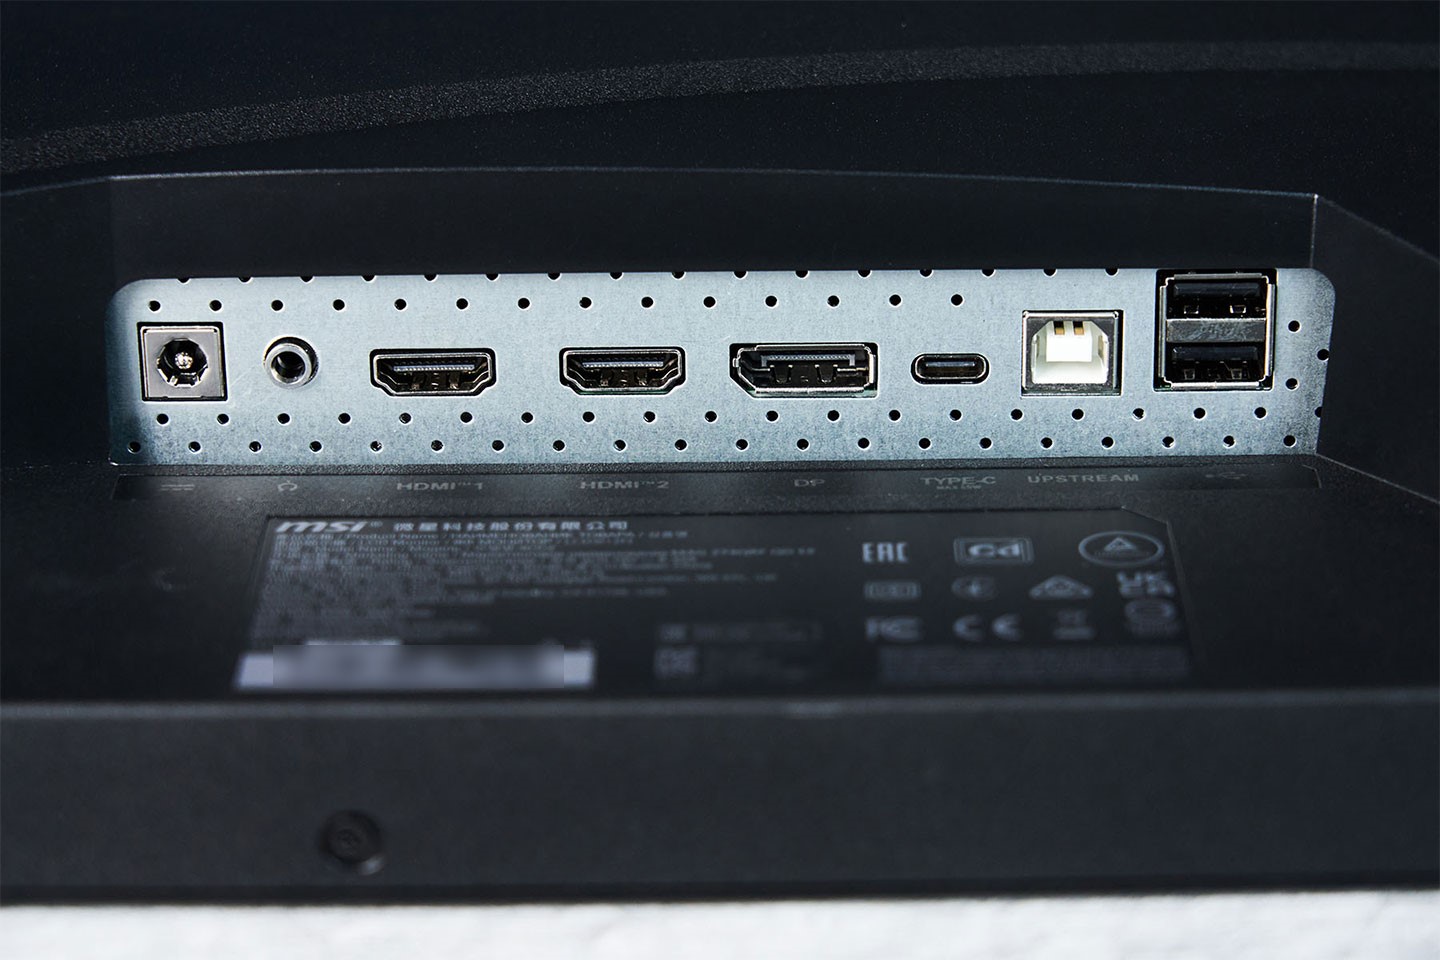 連結埠位於機背底側，由左至右分別為電源接口、3.5 mm 音源、HDMI 2.0b 兩組、一組 DP 1.4a、一組支援 PD 65W 供電的 USB Type-C，連結電腦端的 USB Type B 與兩組可擴充使用的 USB Type-A 埠。